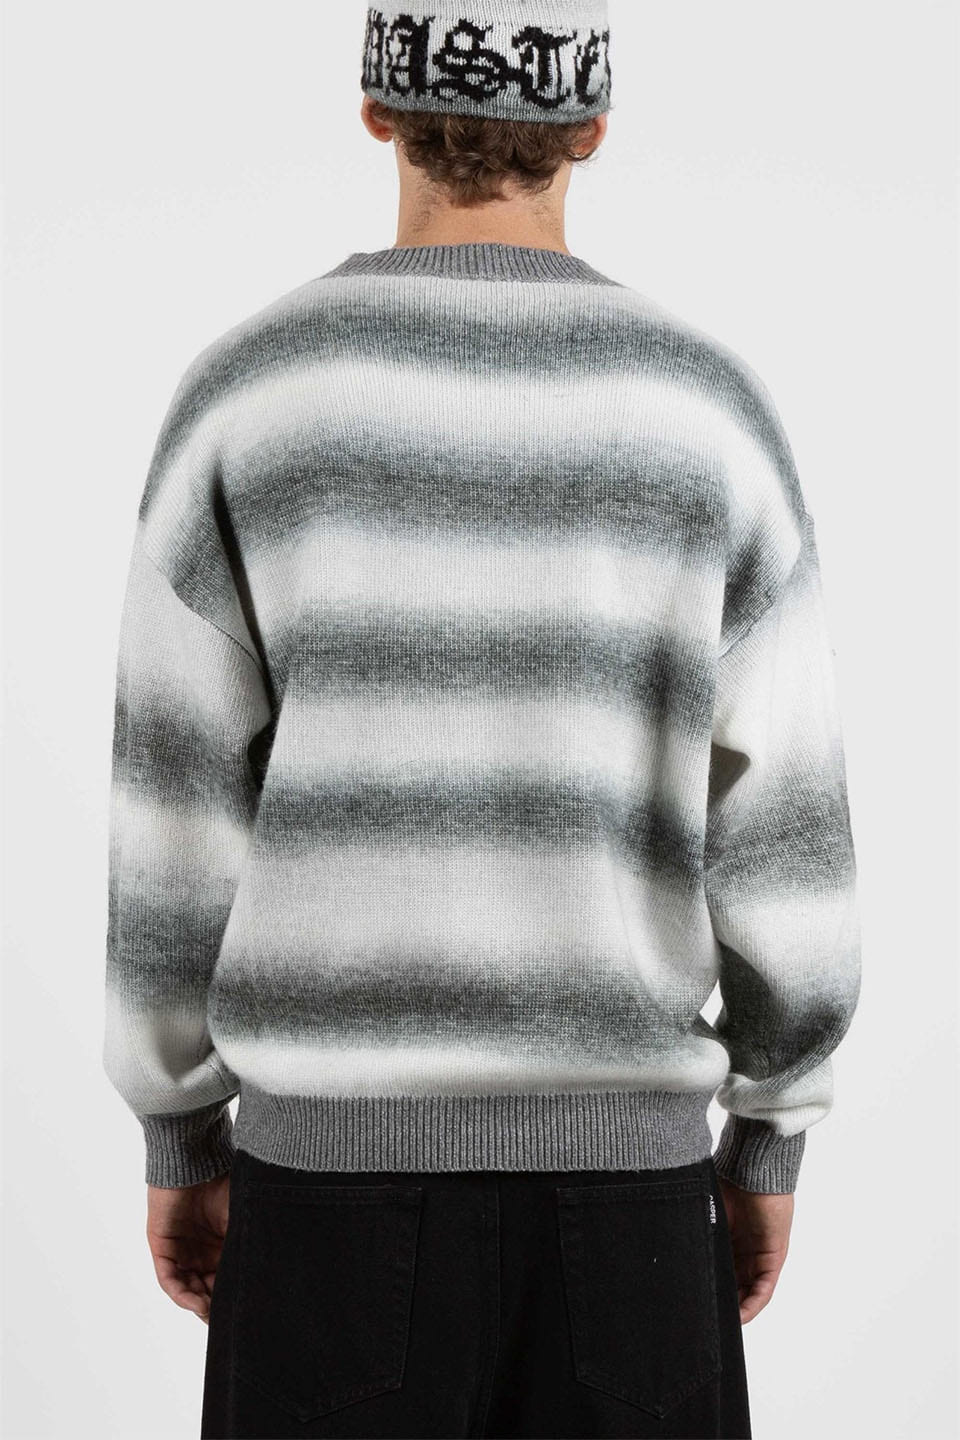 Sweater Blur Kingdom